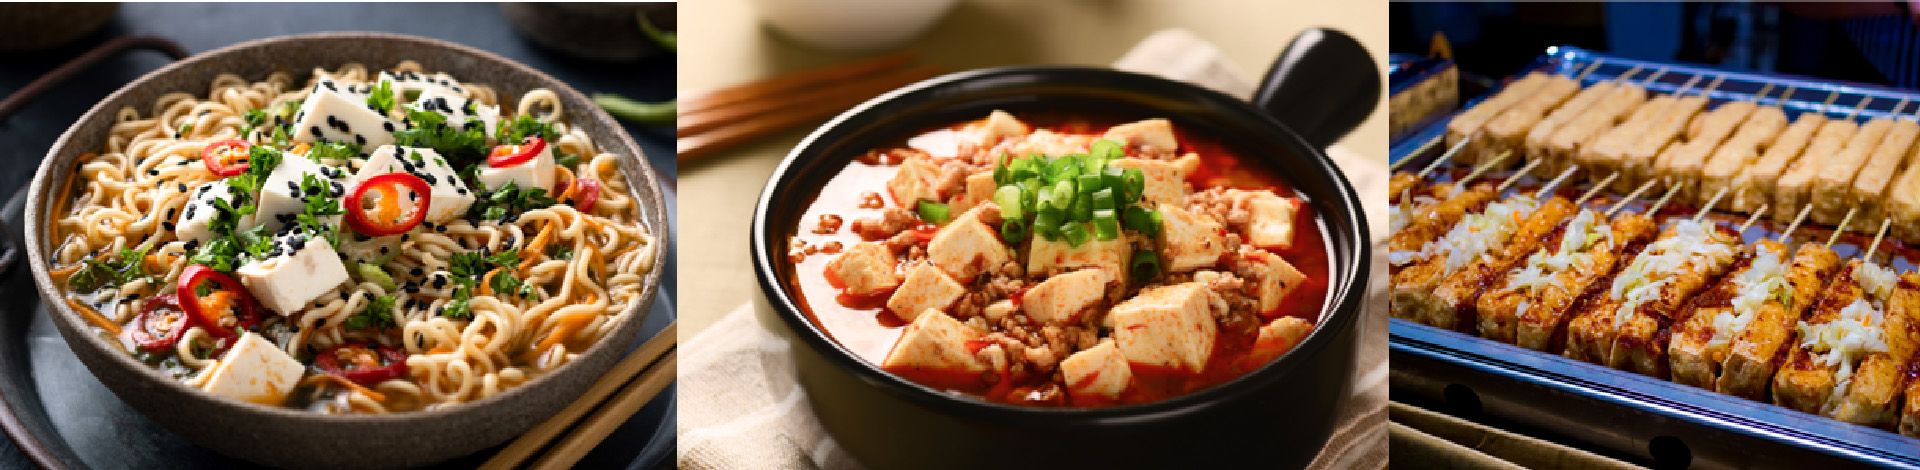 Różne rodzaje tofu mają różną teksturę, twardość i różne zastosowania w potrawach na twoim stole, Yung Soon Lih (eversoon) maszyna do produkcji tofu jest w stanie współpracować z opcjonalnym urządzeniem do produkcji bardzo twardego tofu oraz azjatyckiego jedwabistego tofu.